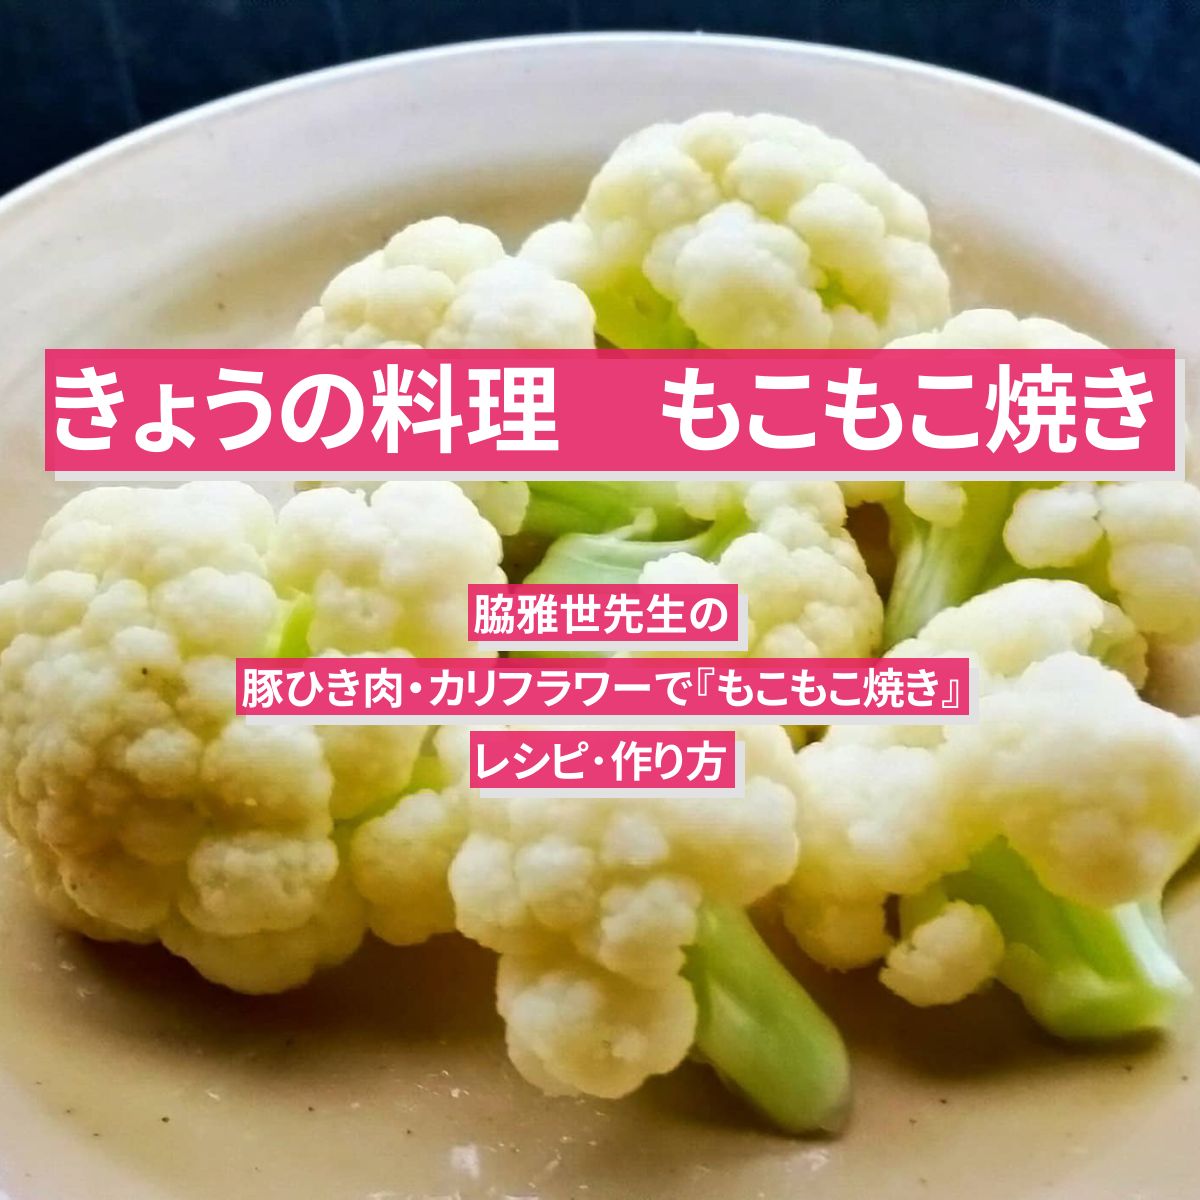 【きょうの料理】豚ひき肉・カリフラワーで『もこもこ焼き』脇雅世先生のレシピ･作り方